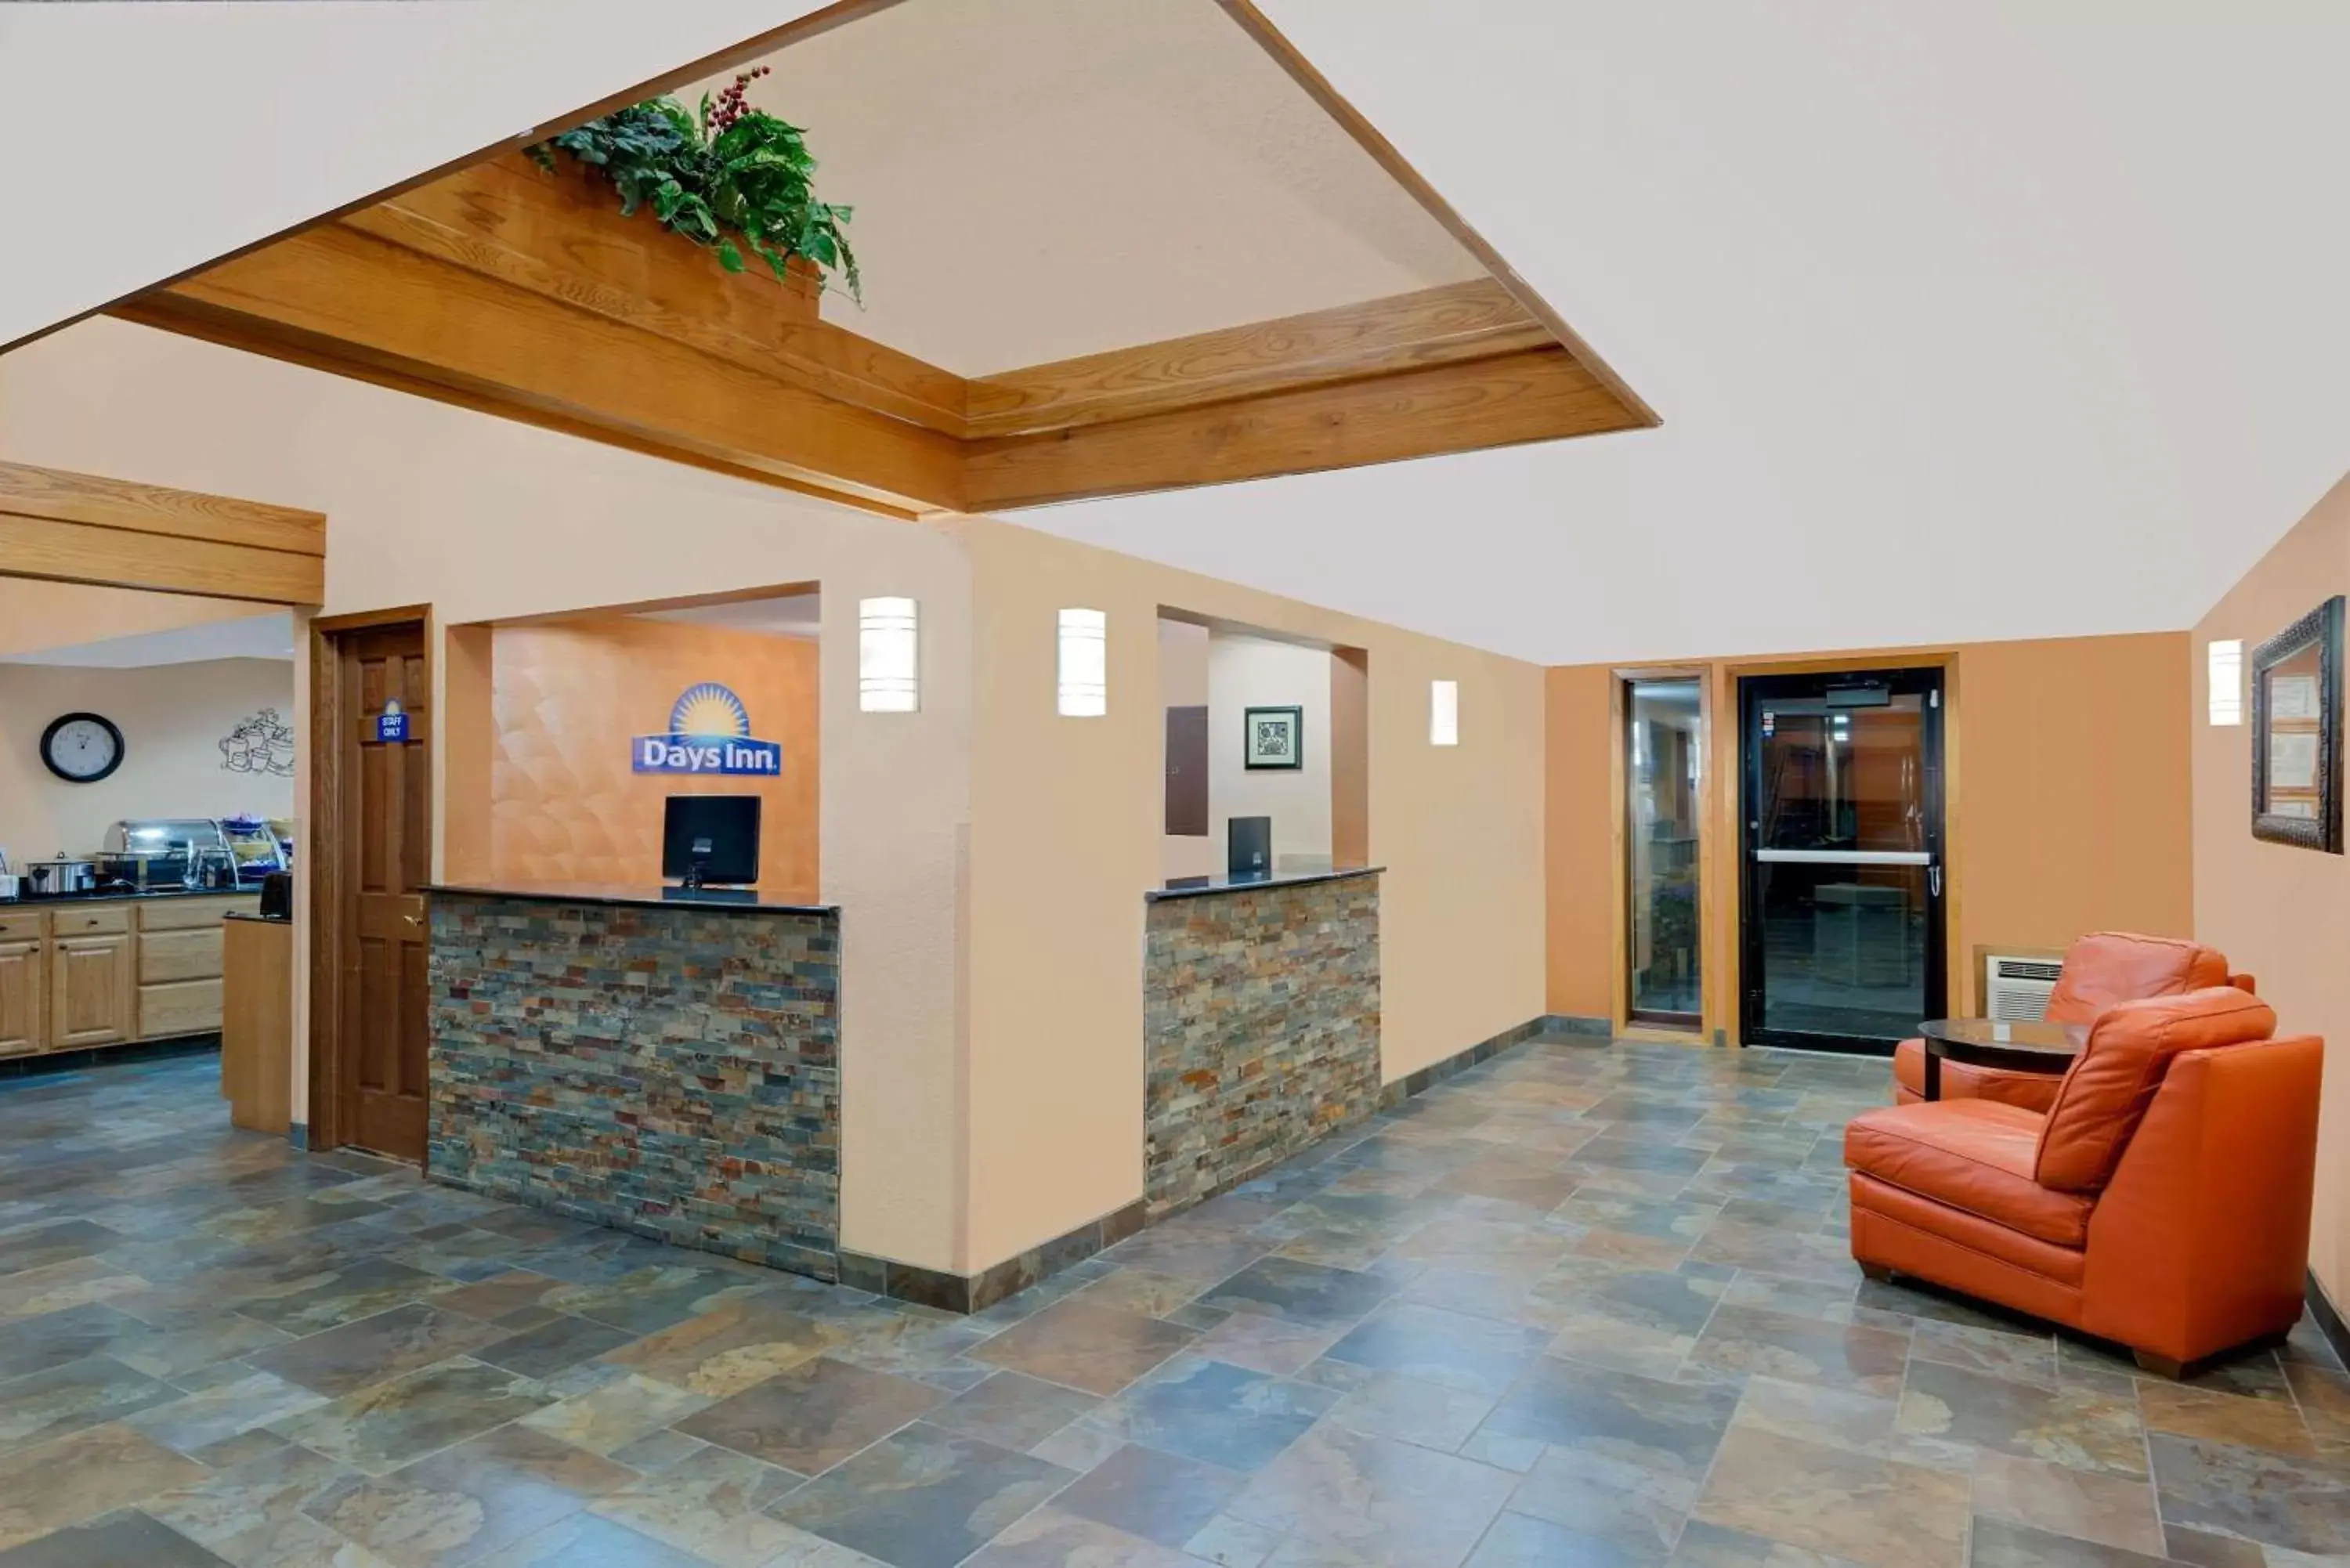 Lobby or reception, Lobby/Reception in Days Inn by Wyndham Fort Dodge